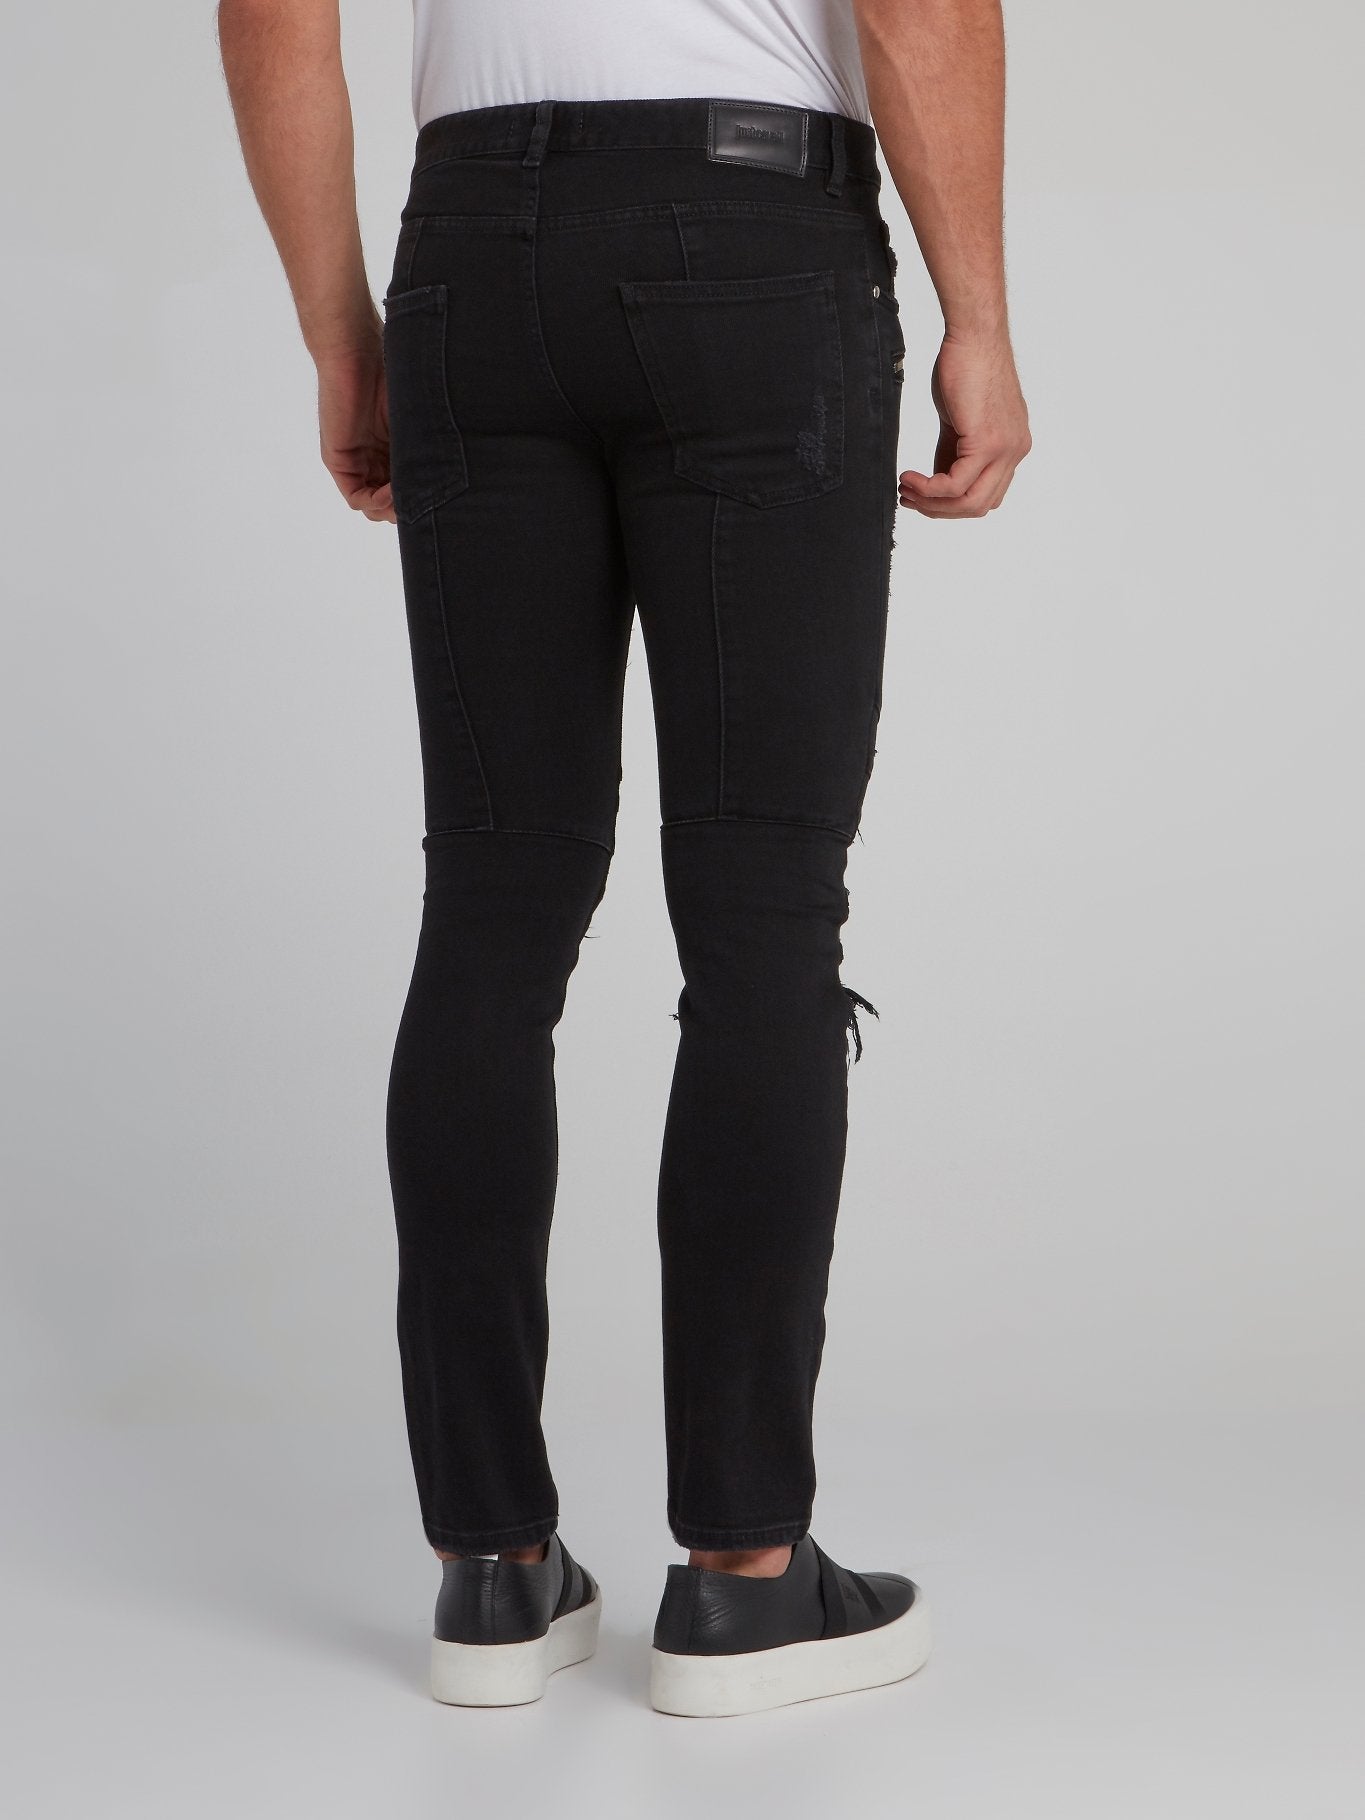 Black Zipper Embellished Tattered Skinny Jeans